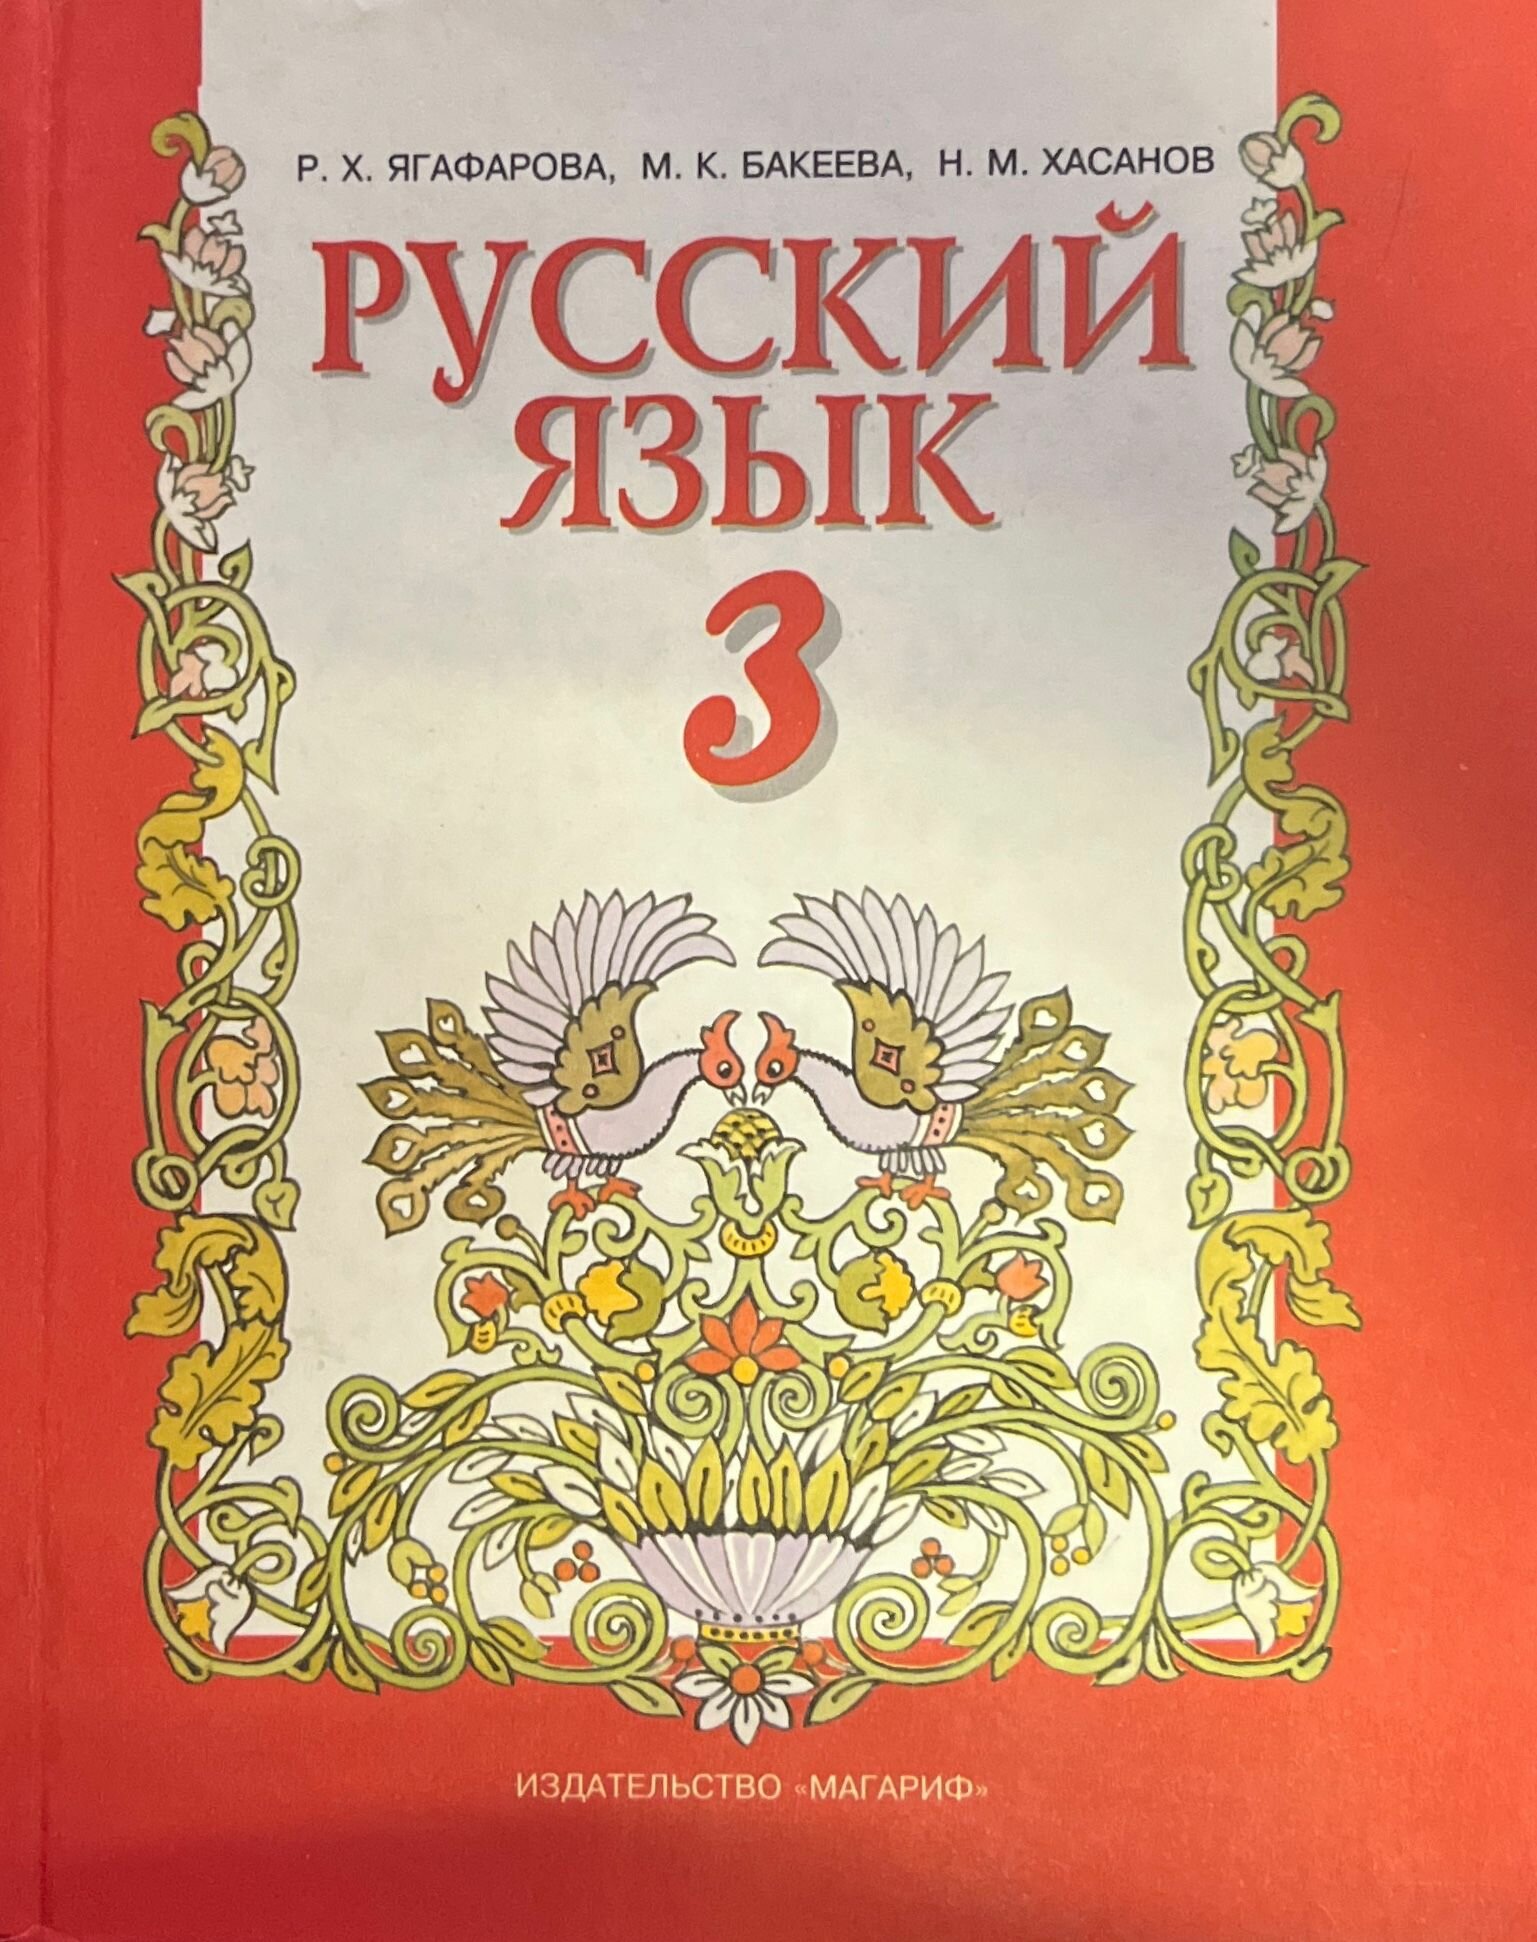 Русский язык 3 2000 г.